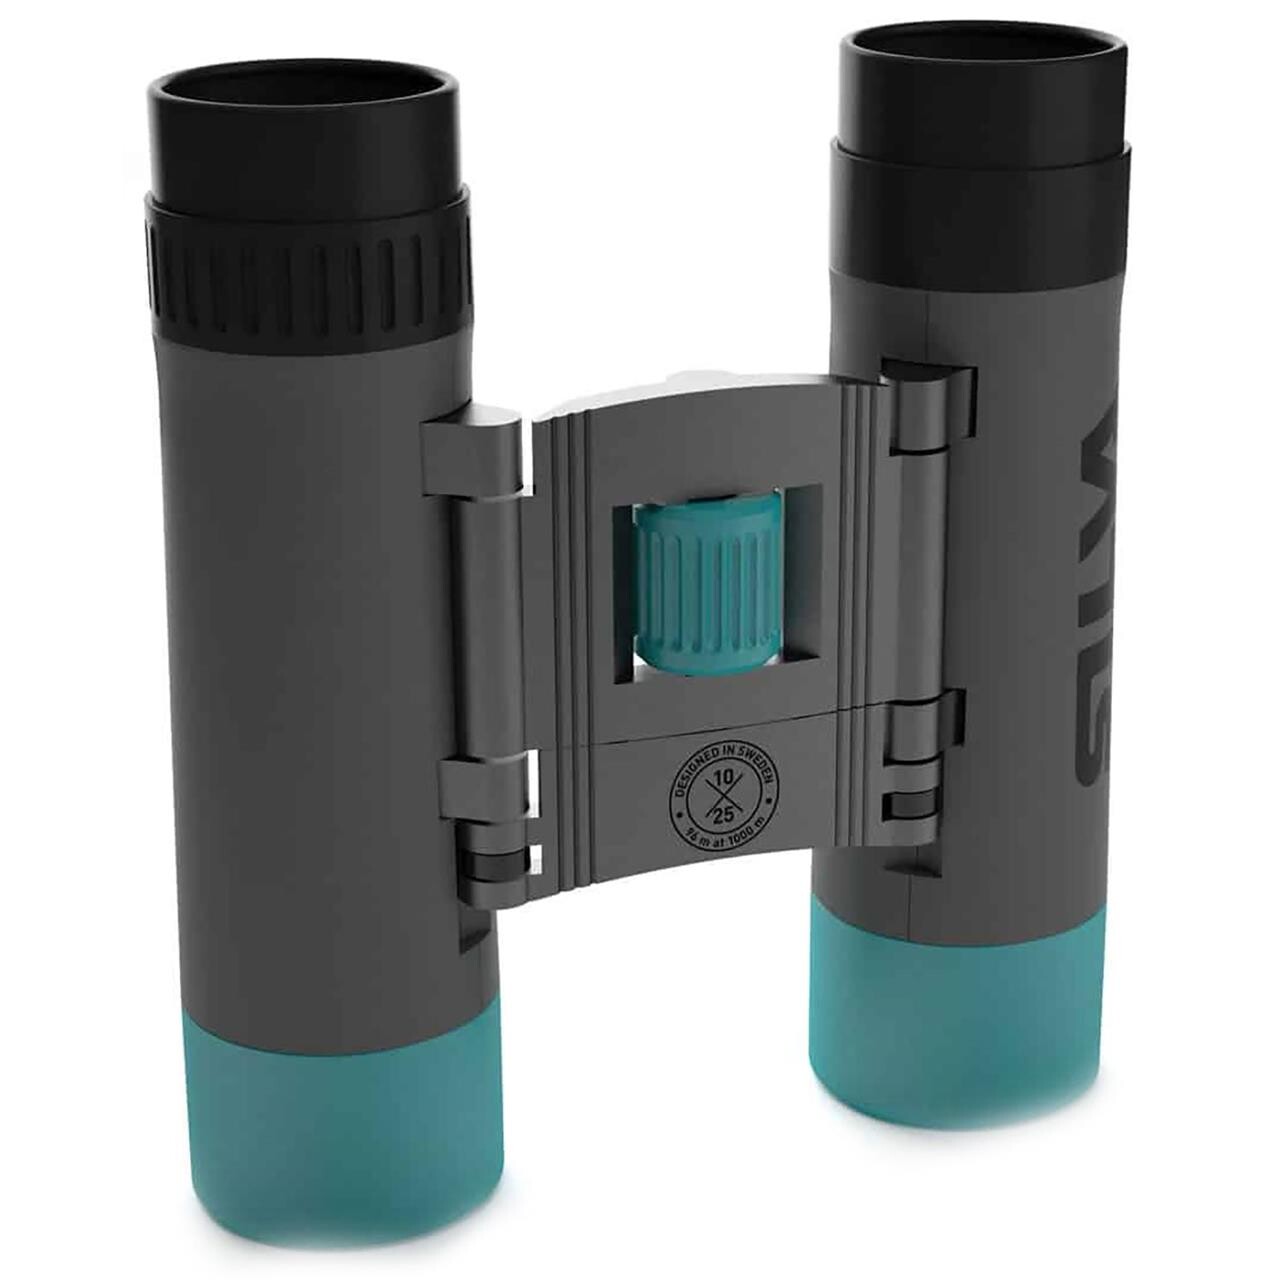 Se Silva Binocular Pocket 10X hos Friluftsland.dk